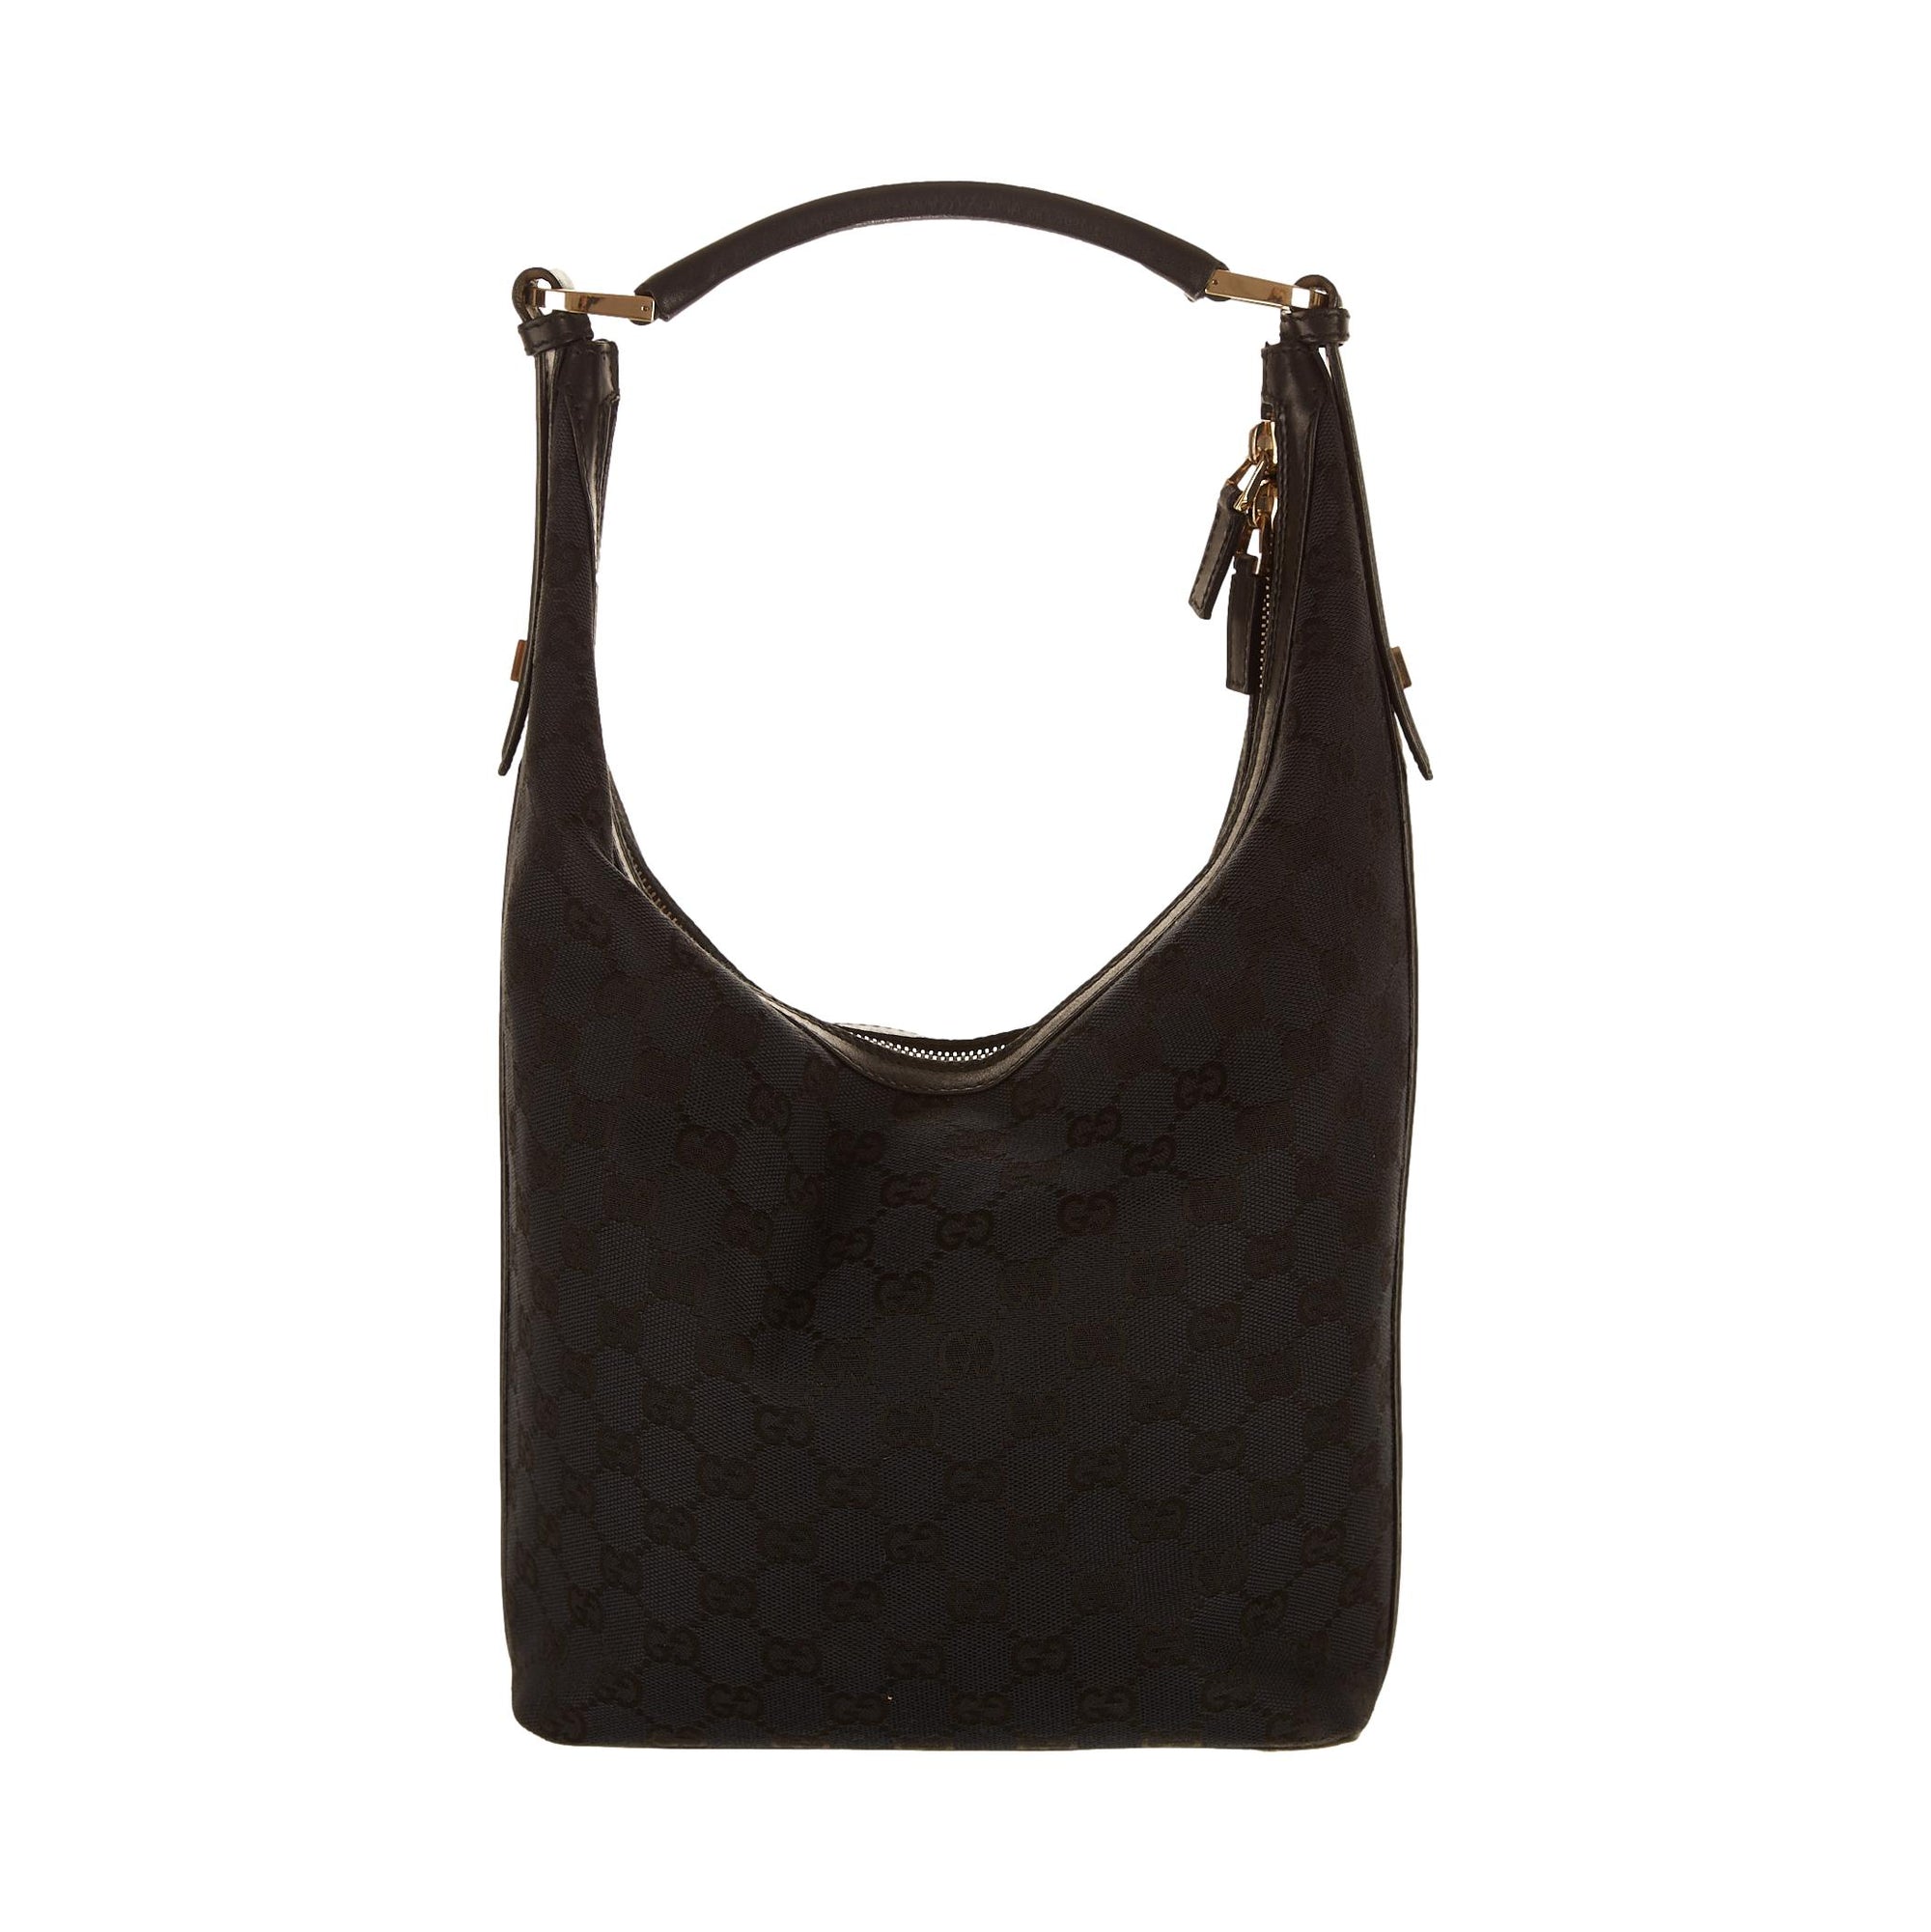 Gucci Black Logo Shoulder Bag